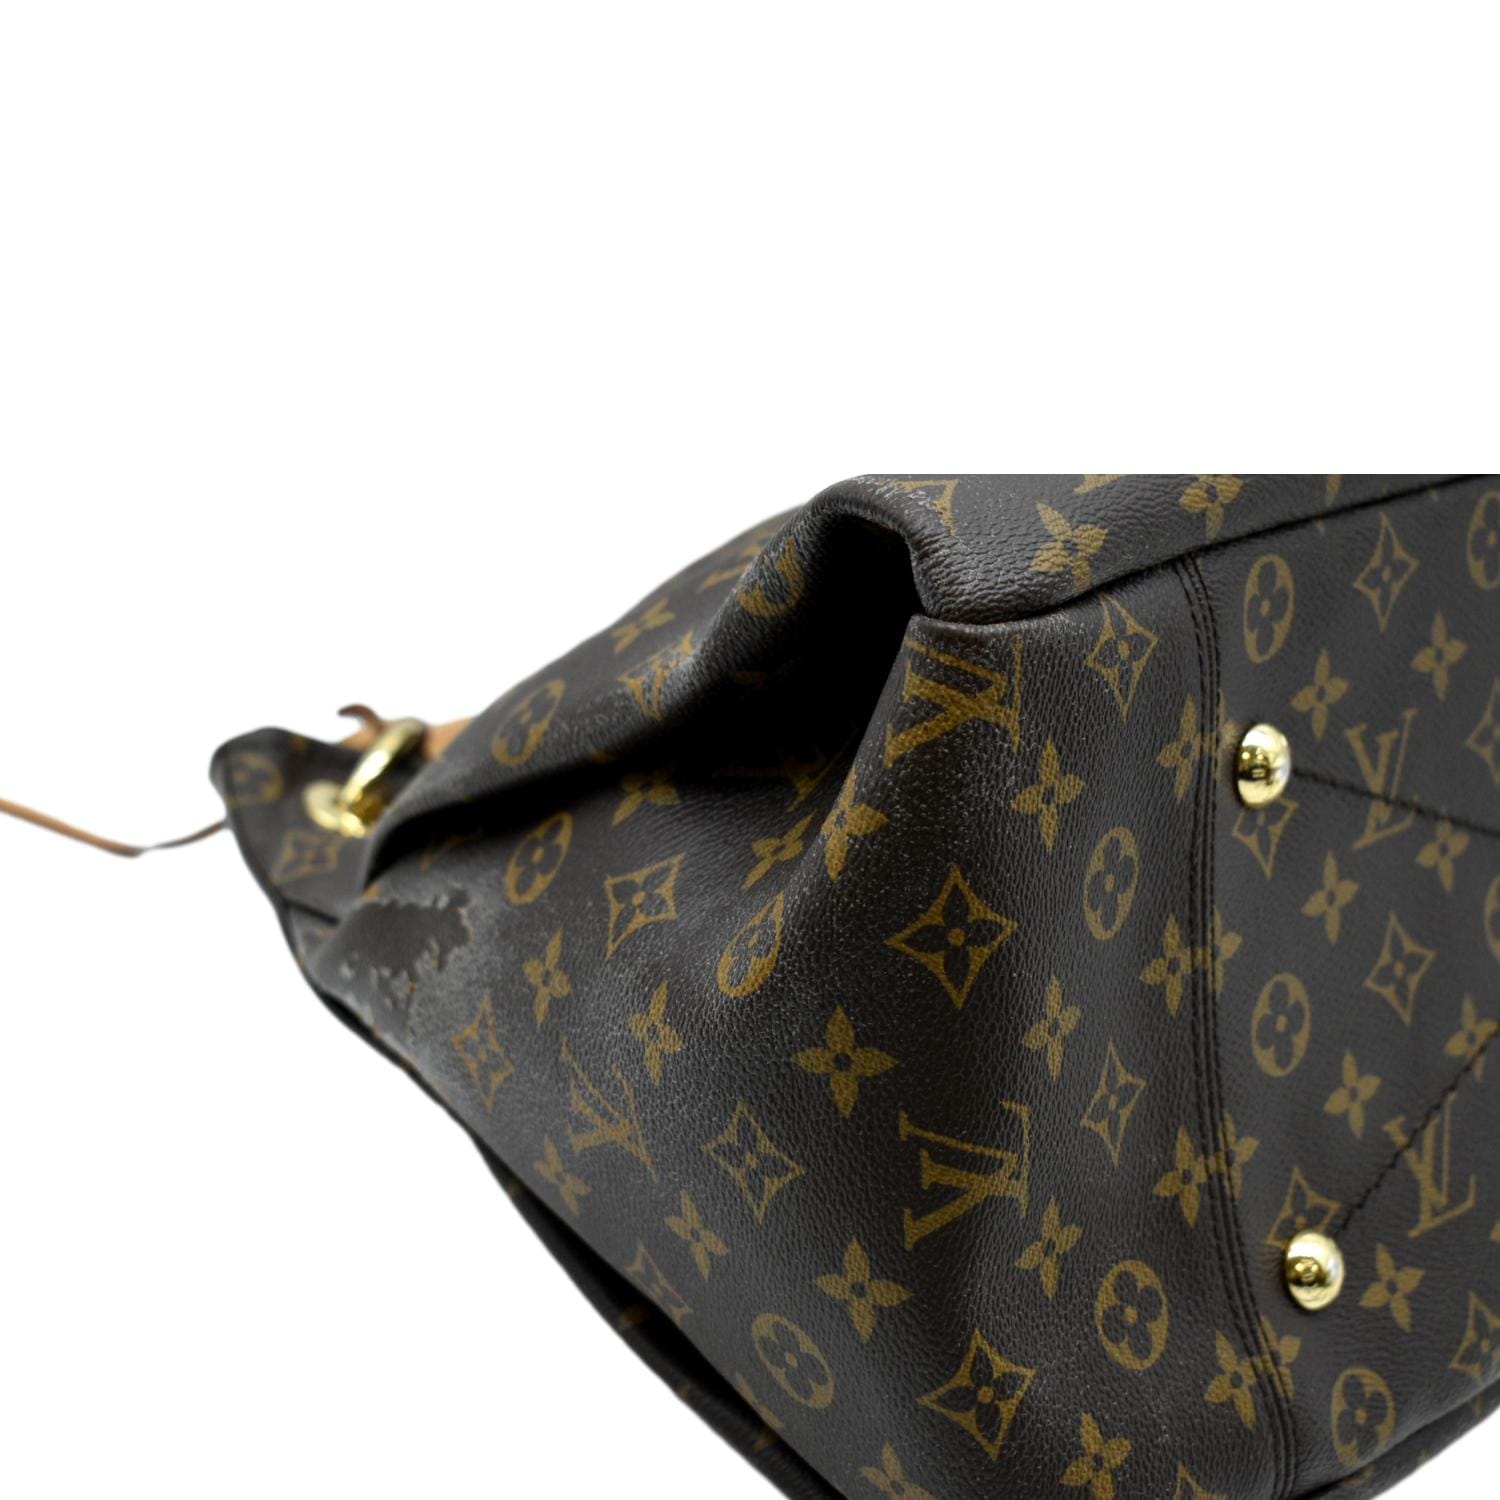 Louis Vuitton Artsy Bag - Oh My Handbags